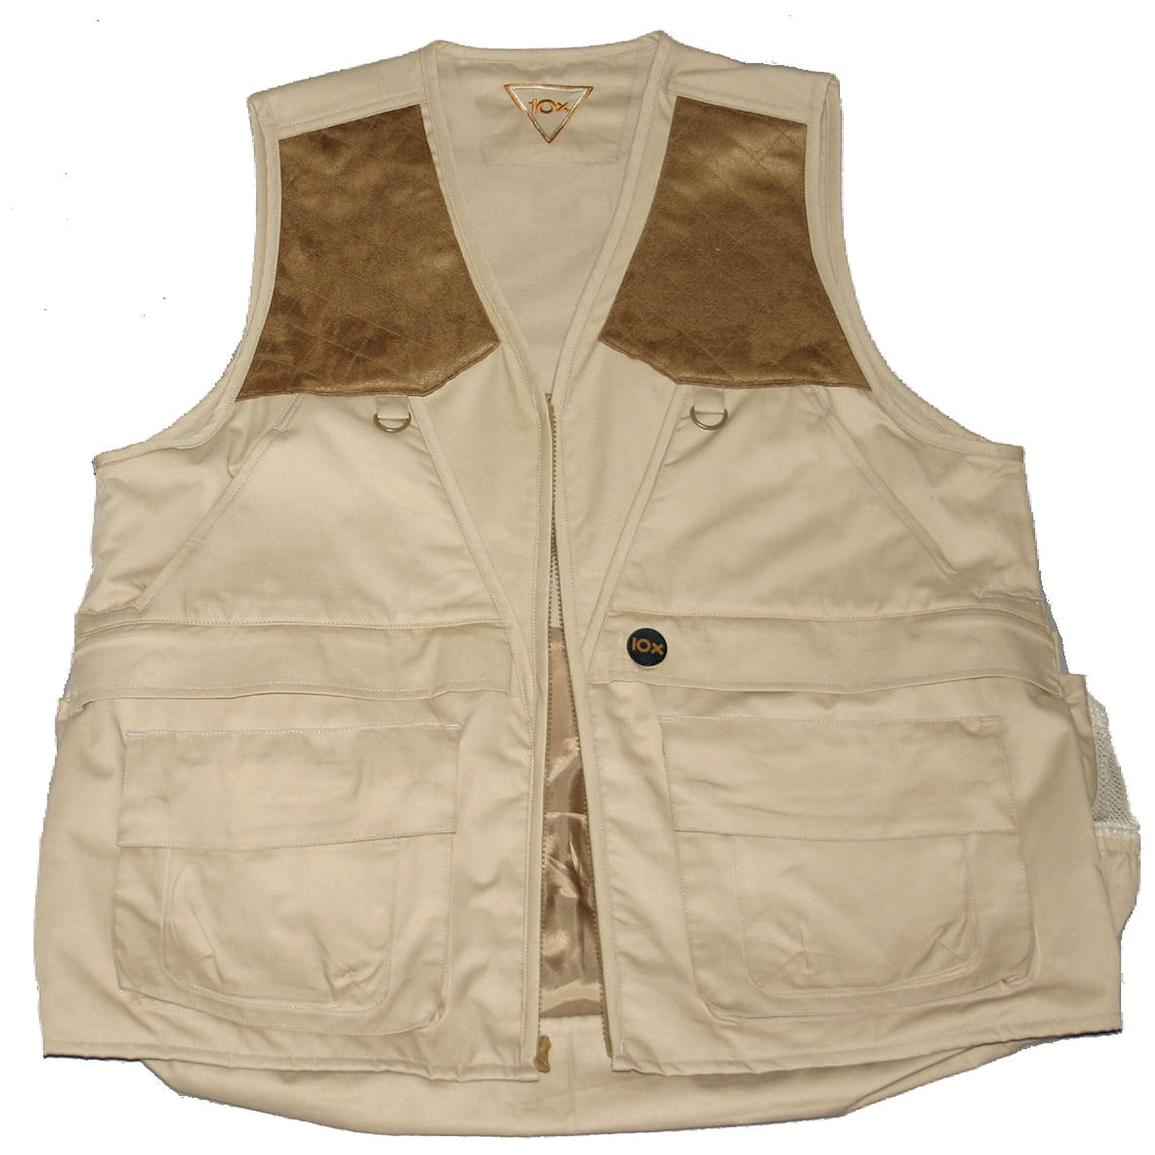 Walls® 10X® Upland Vest, Safari Tan - 126955, Upland Hunting Clothing ...